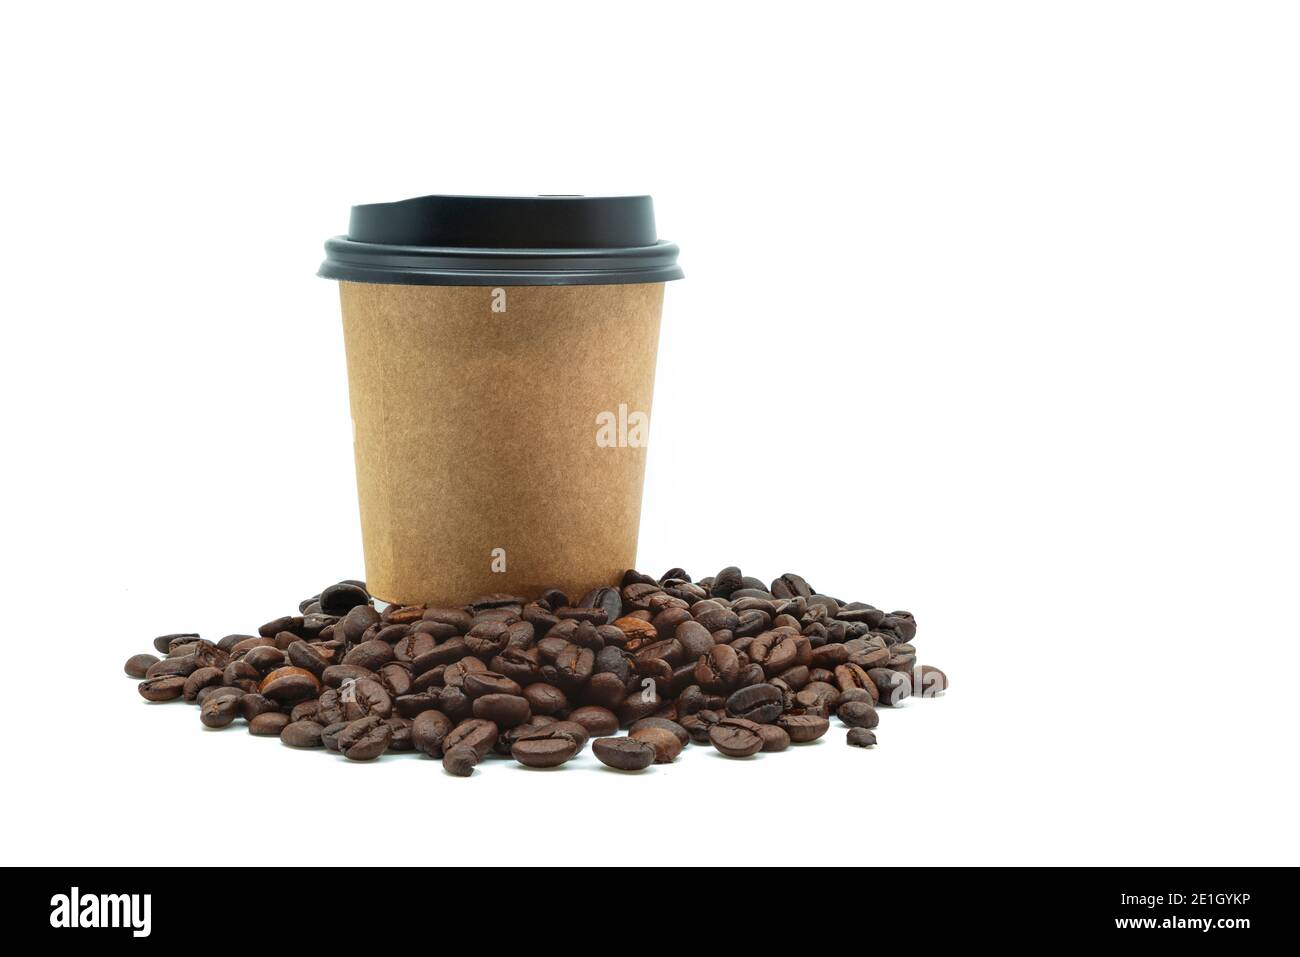 Isolierte schöne Take Away Kaffeetasse mit Kaffeebohnen auf weißem Hintergrund, braunes Papier wickeln um Take Away Kaffeetasse mit schwarzem Deckel. Leerzeichen Stockfoto